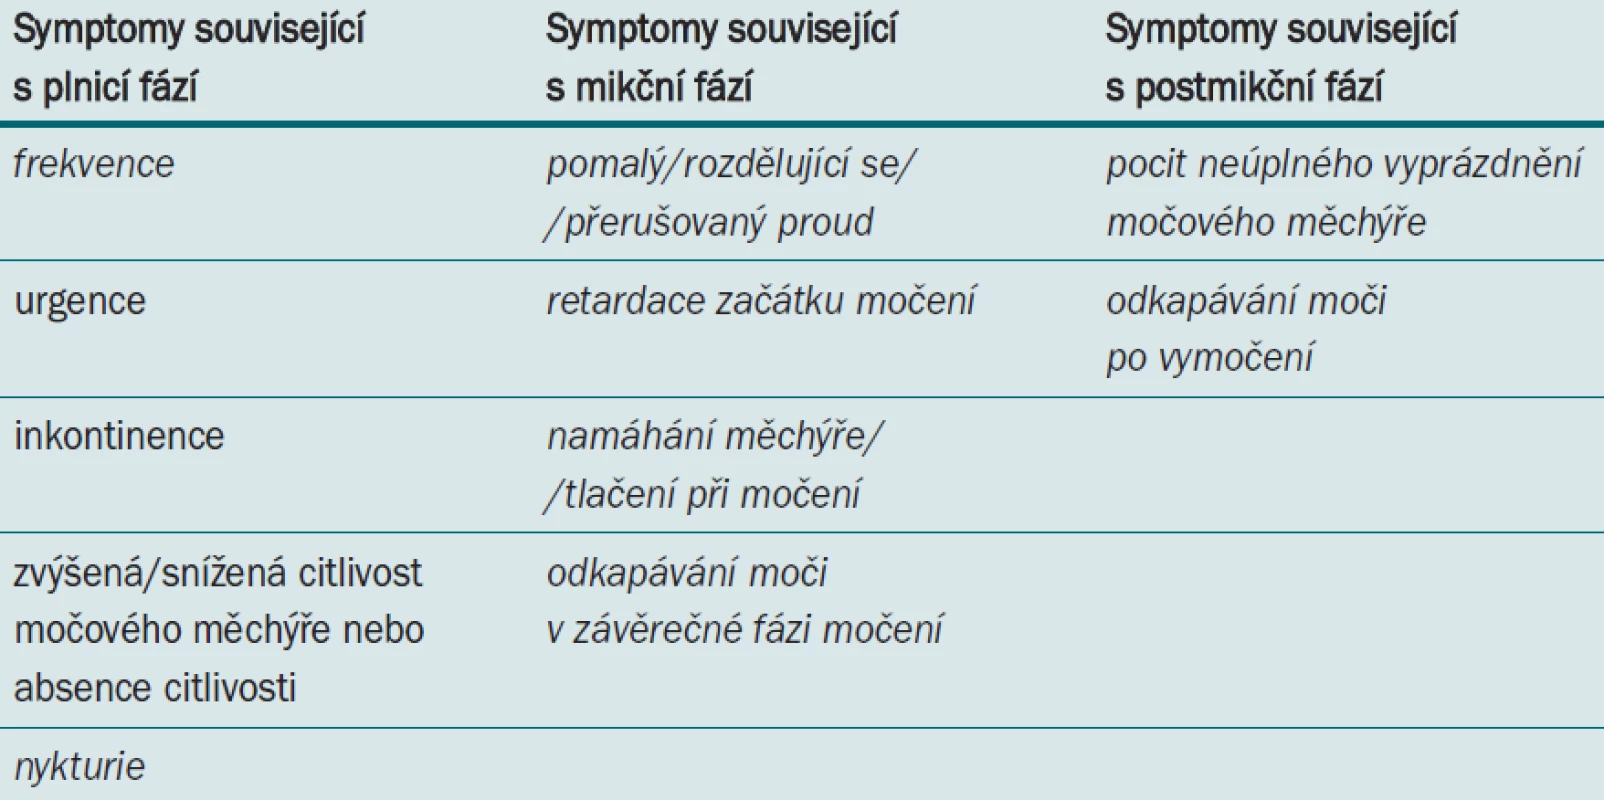 Symptomy dolních cest močových, symptomy společné pro BPO jsou vyznačeny kurzívou.